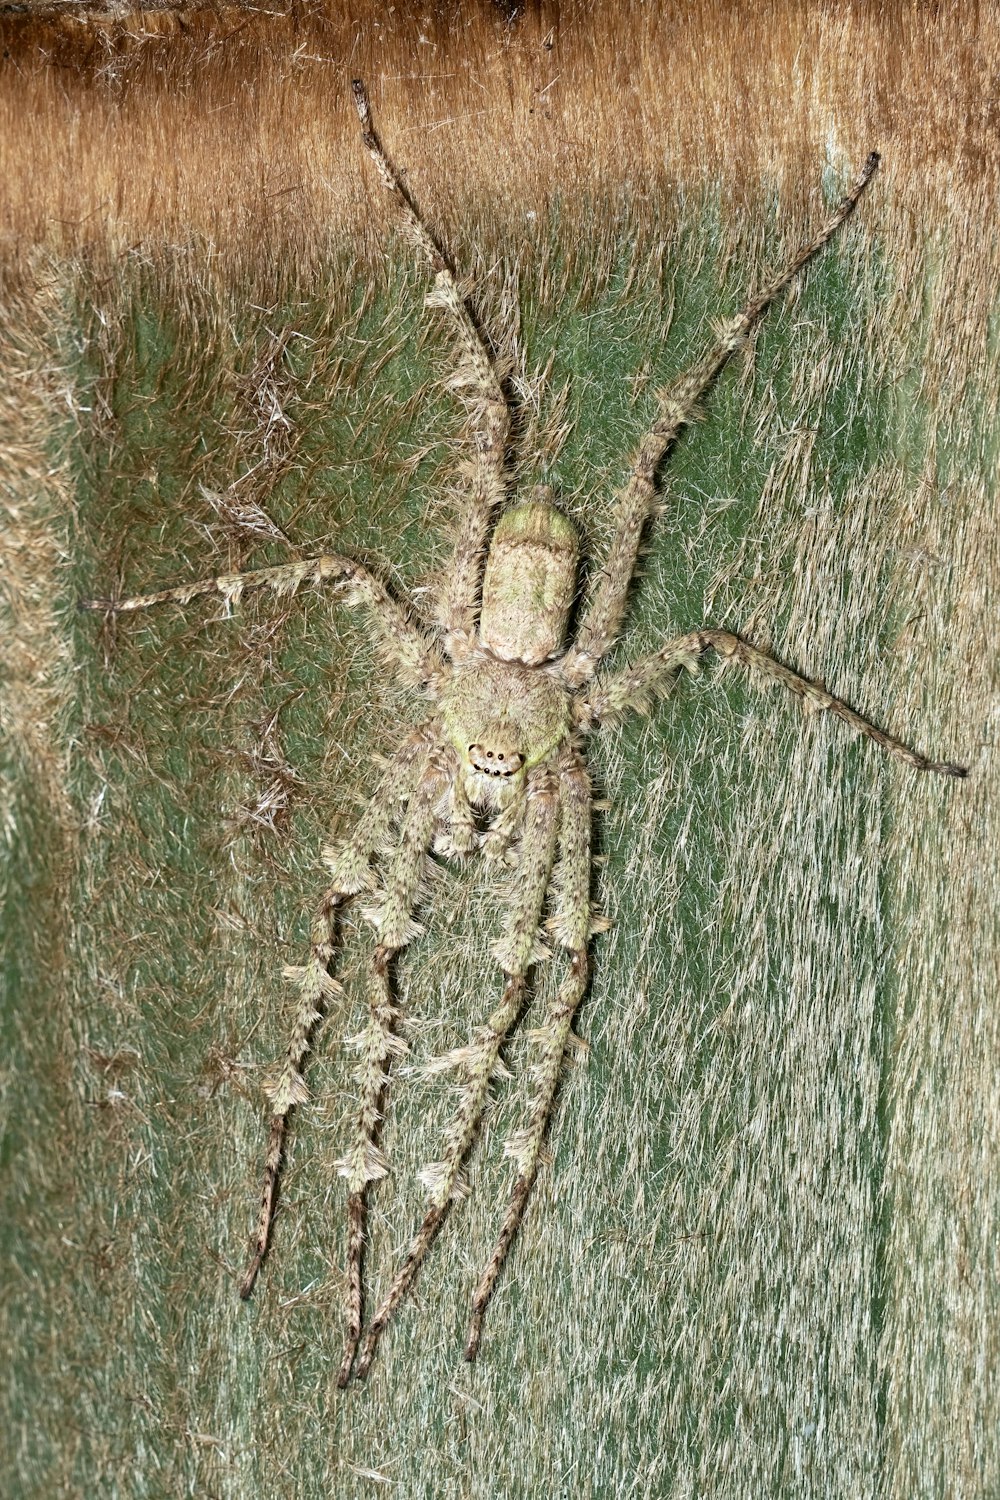 Una imagen de una araña en la hierba